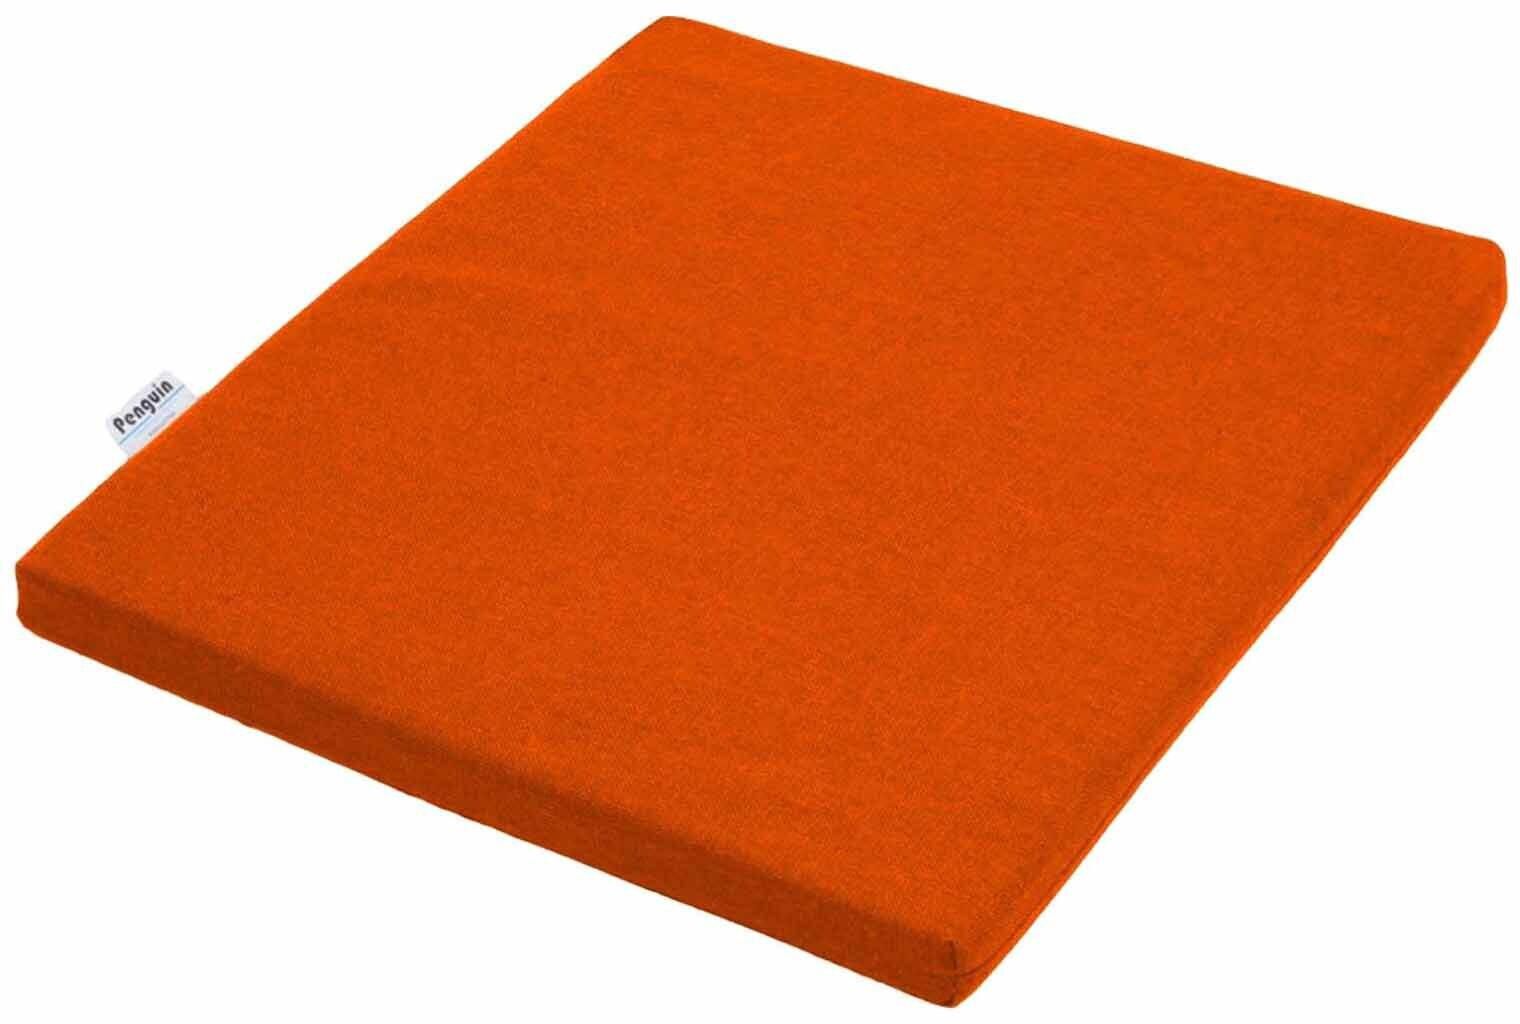 Penguin Square Cushion - 50 x 52 cm - Orange